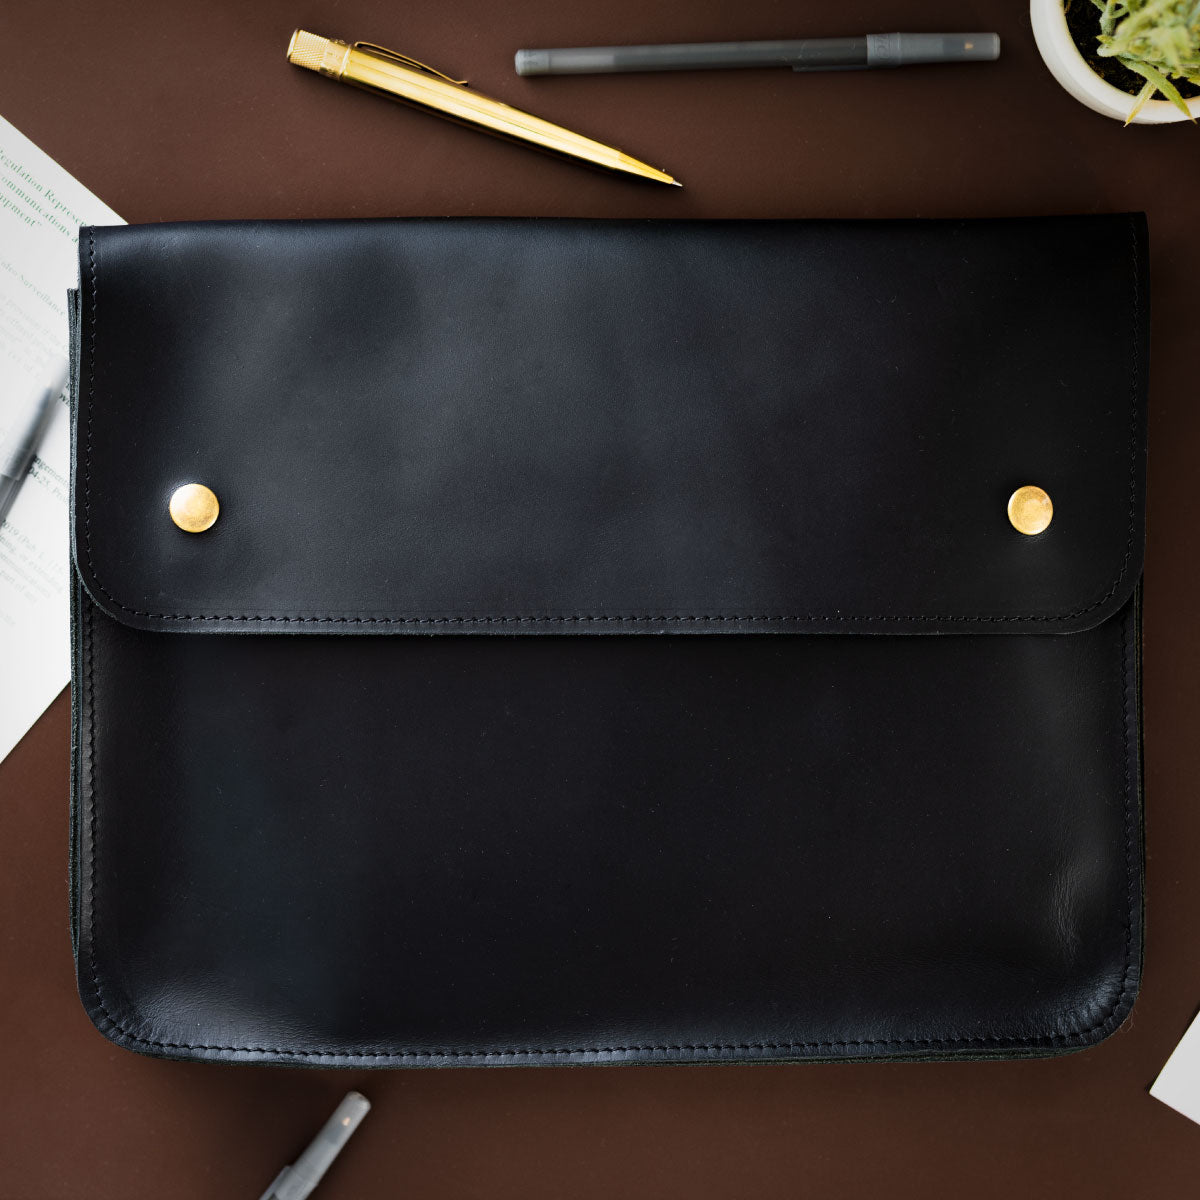 Buy Leather Portfolio for men, Leather document folder for Women